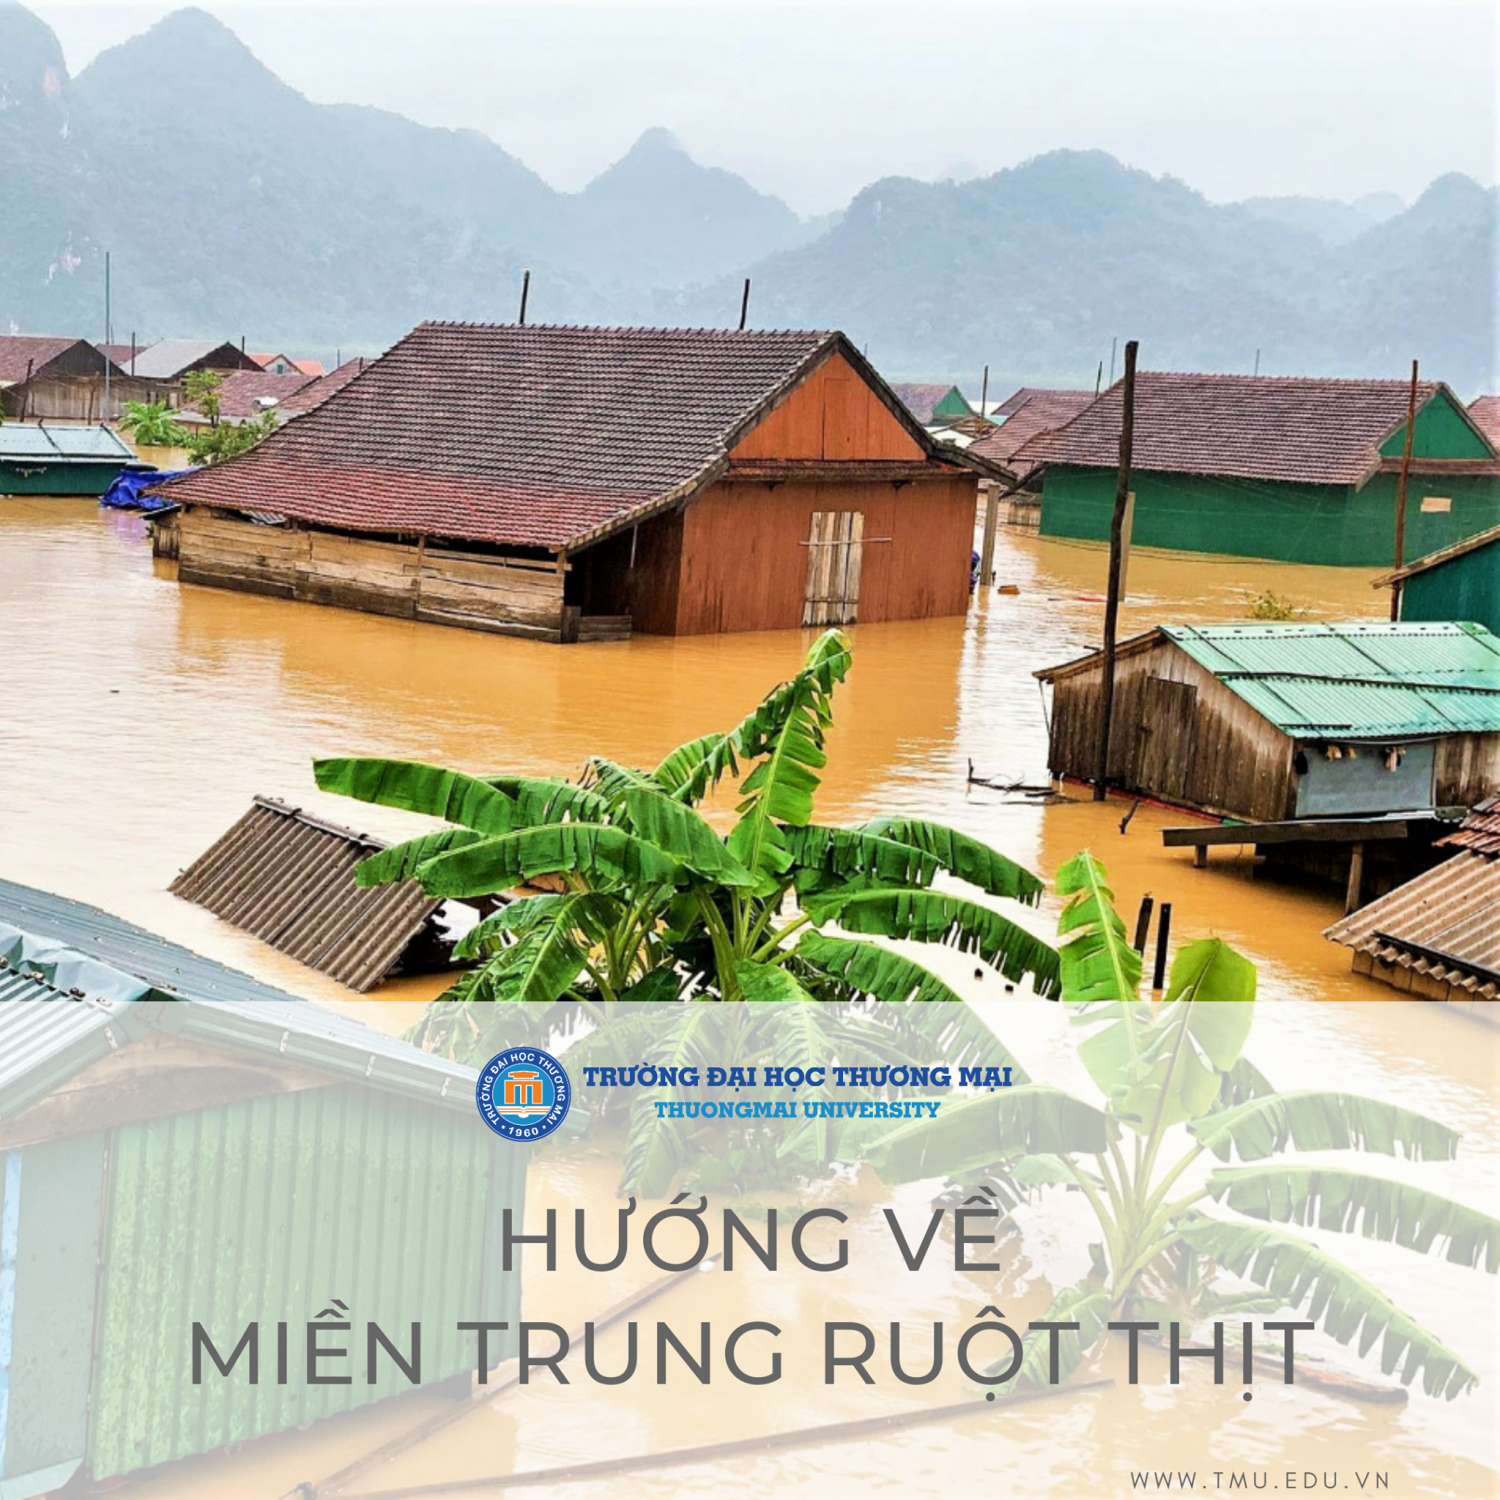 Thông báo ủng hộ sinh viên vùng lũ lụt miền Nam Trung Bộ